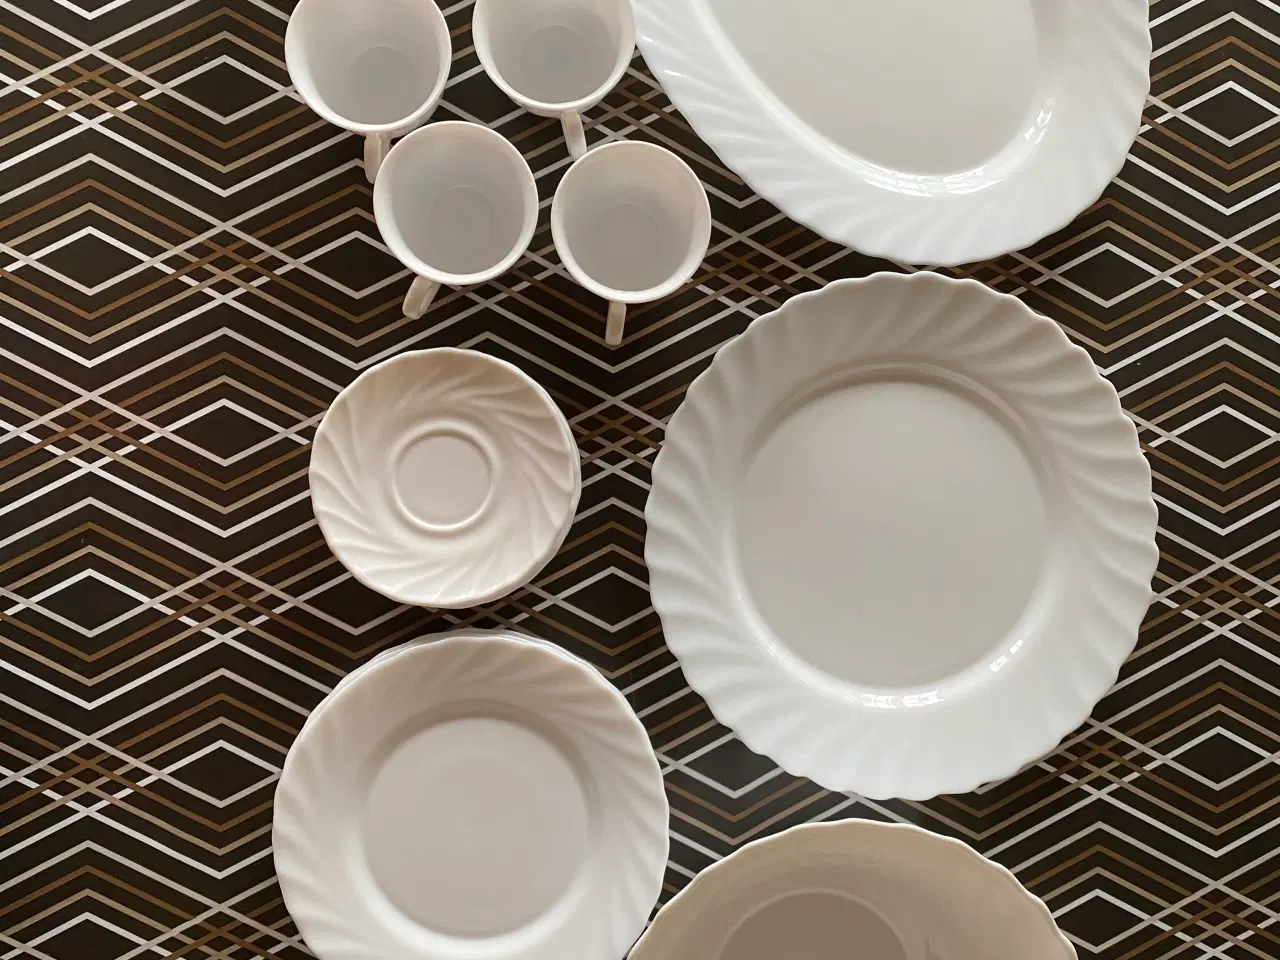 Billede 1 - Kopper, tallerkener, skål og fade i samme mønster